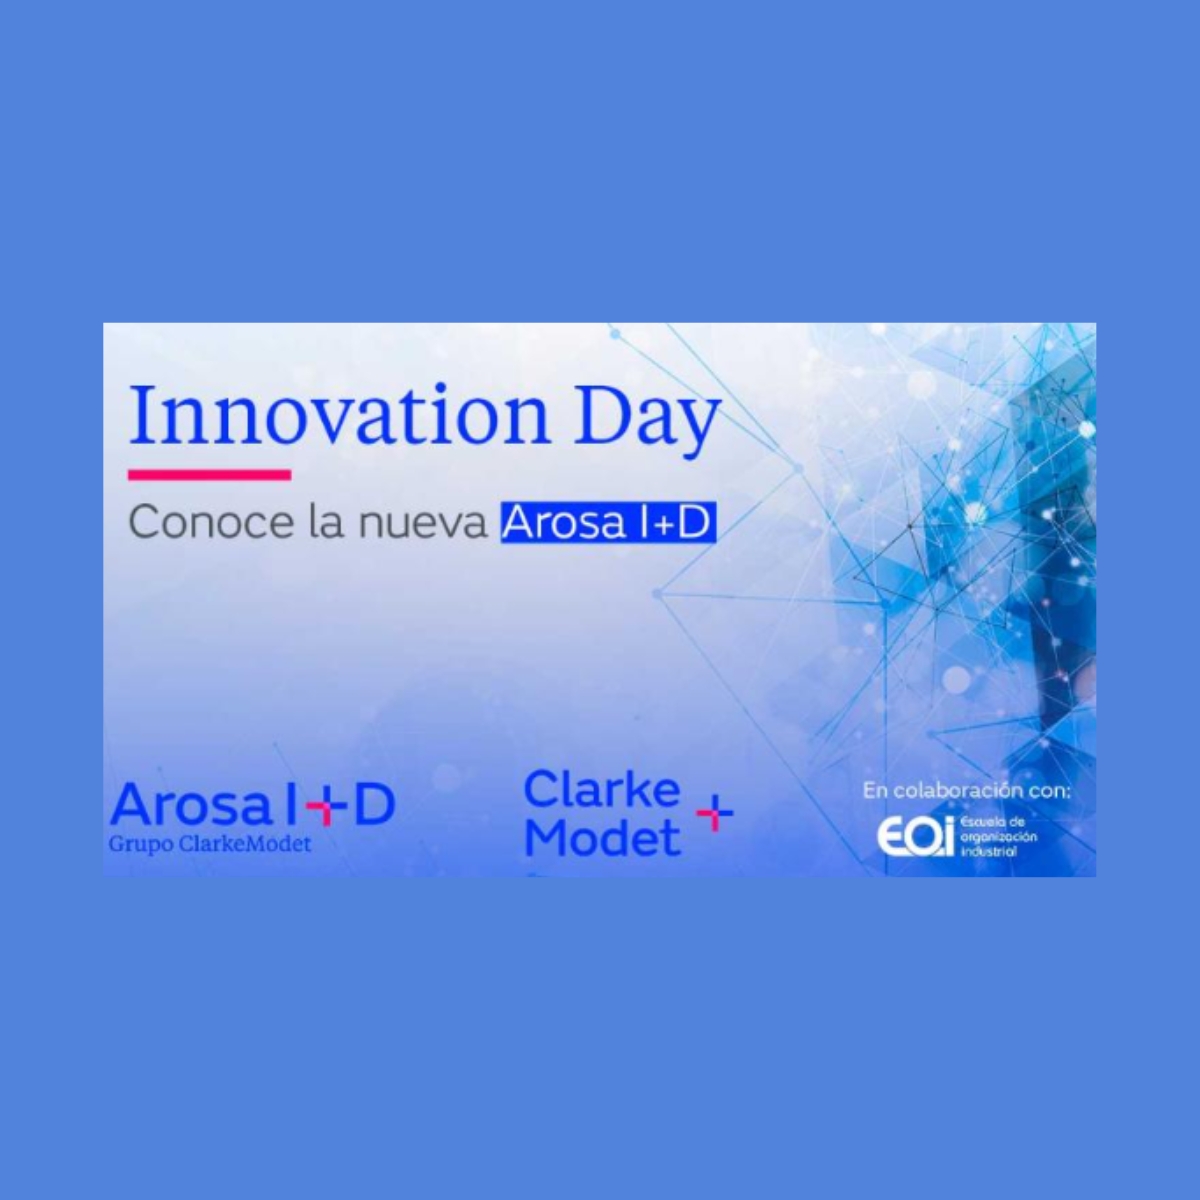 📢 @Arosa_ID celebrará el 18 de abril su #InnovationDay, en la sede de la @eoi, ubicada en Madrid 📌

👉🏻 La cita servirá para analizar las últimas tendencias en gestión de I+D+i, liderazgo tecnológico y propiedad intelectual.

📱Más información 👉🏻foodforlife-spain.es/228975-2/